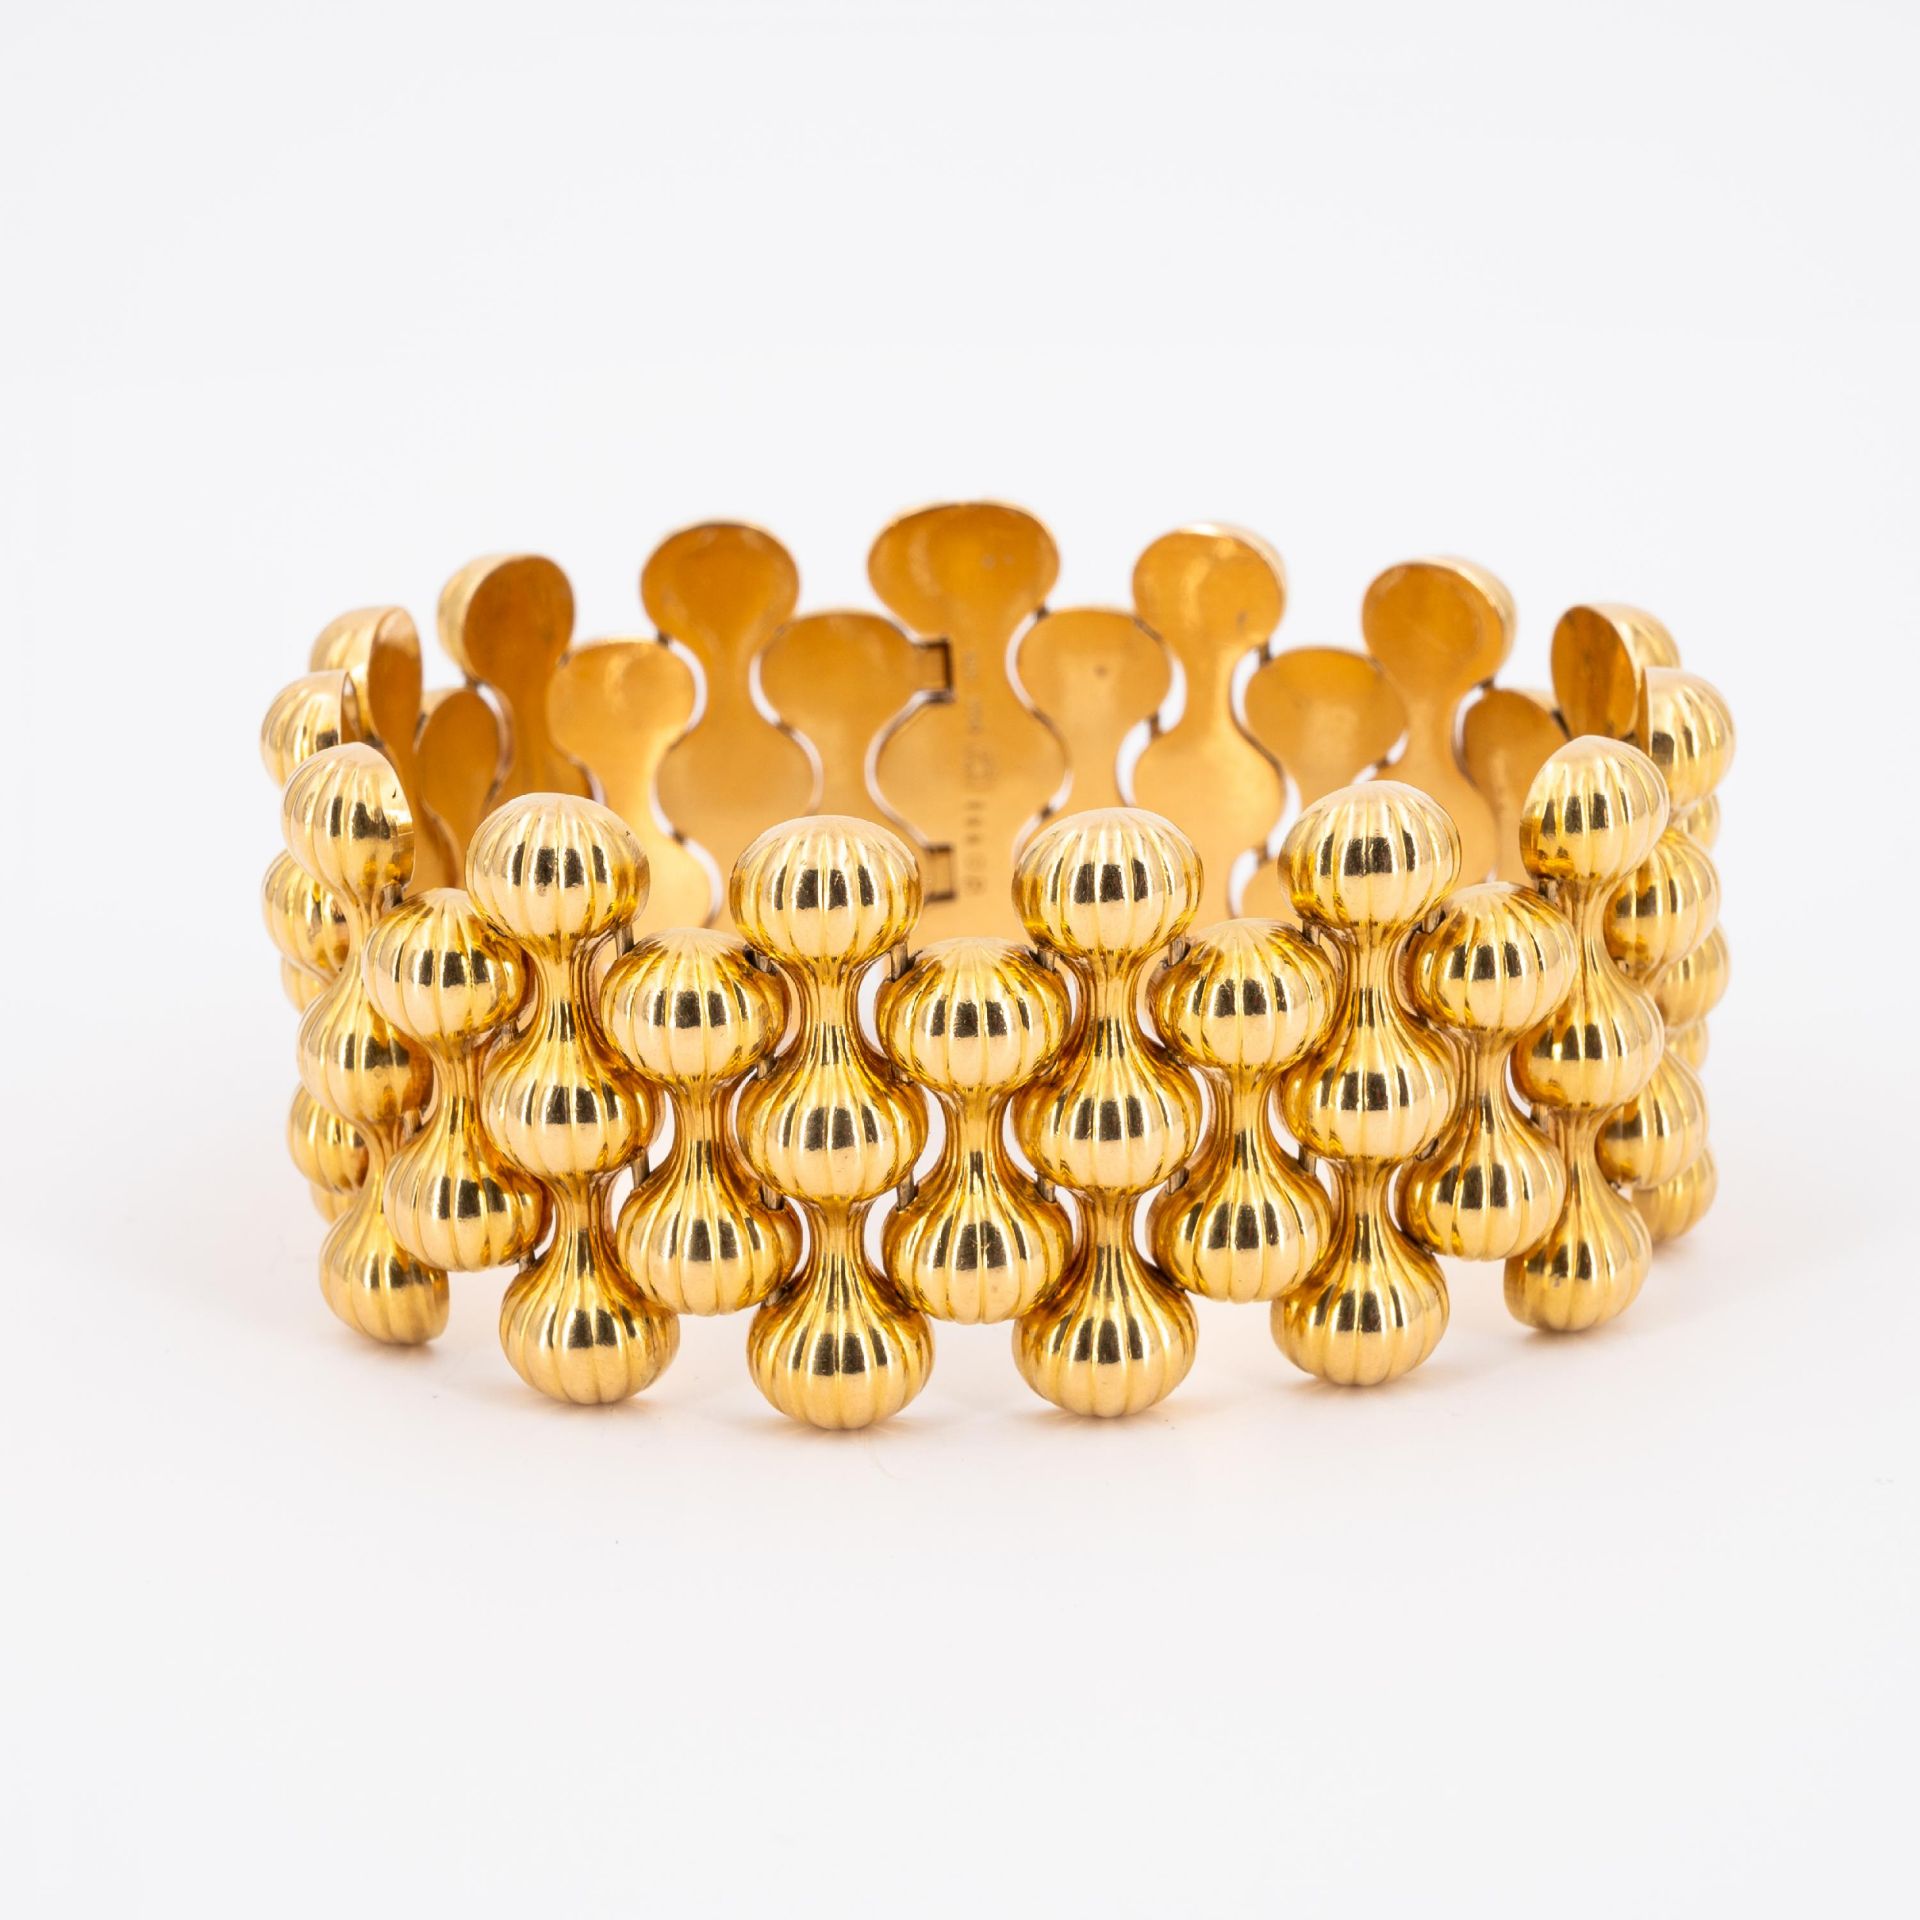 Georg Jensen: Gold-Armband - Bild 2 aus 4